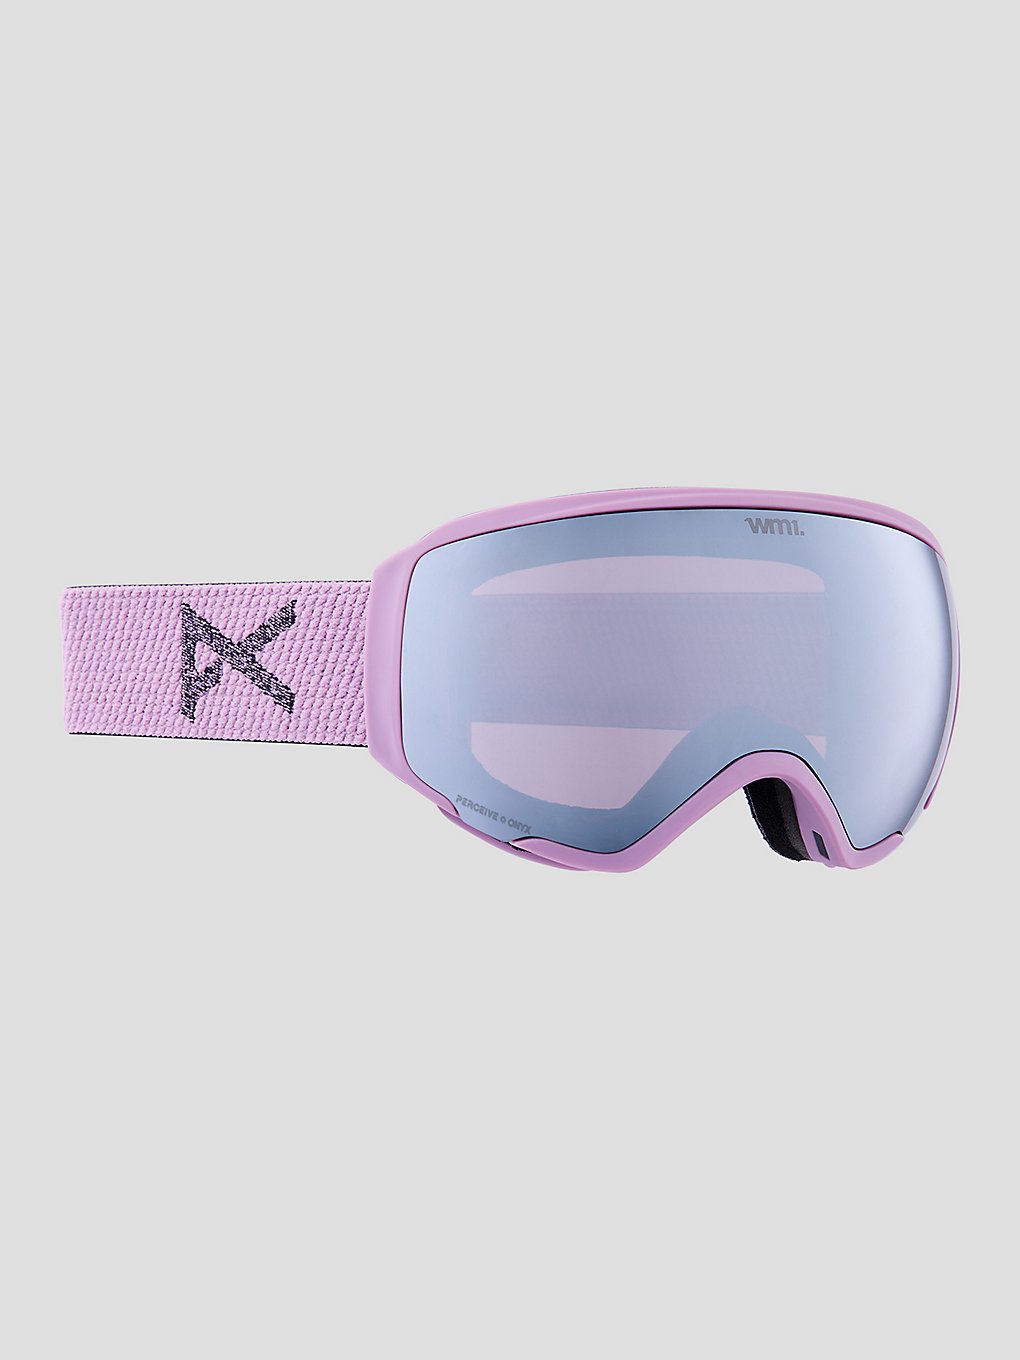 Anon Wm1 Mfi + Spare Goggle Snowboardbrille Skibrille Ski-brille Purple/violet